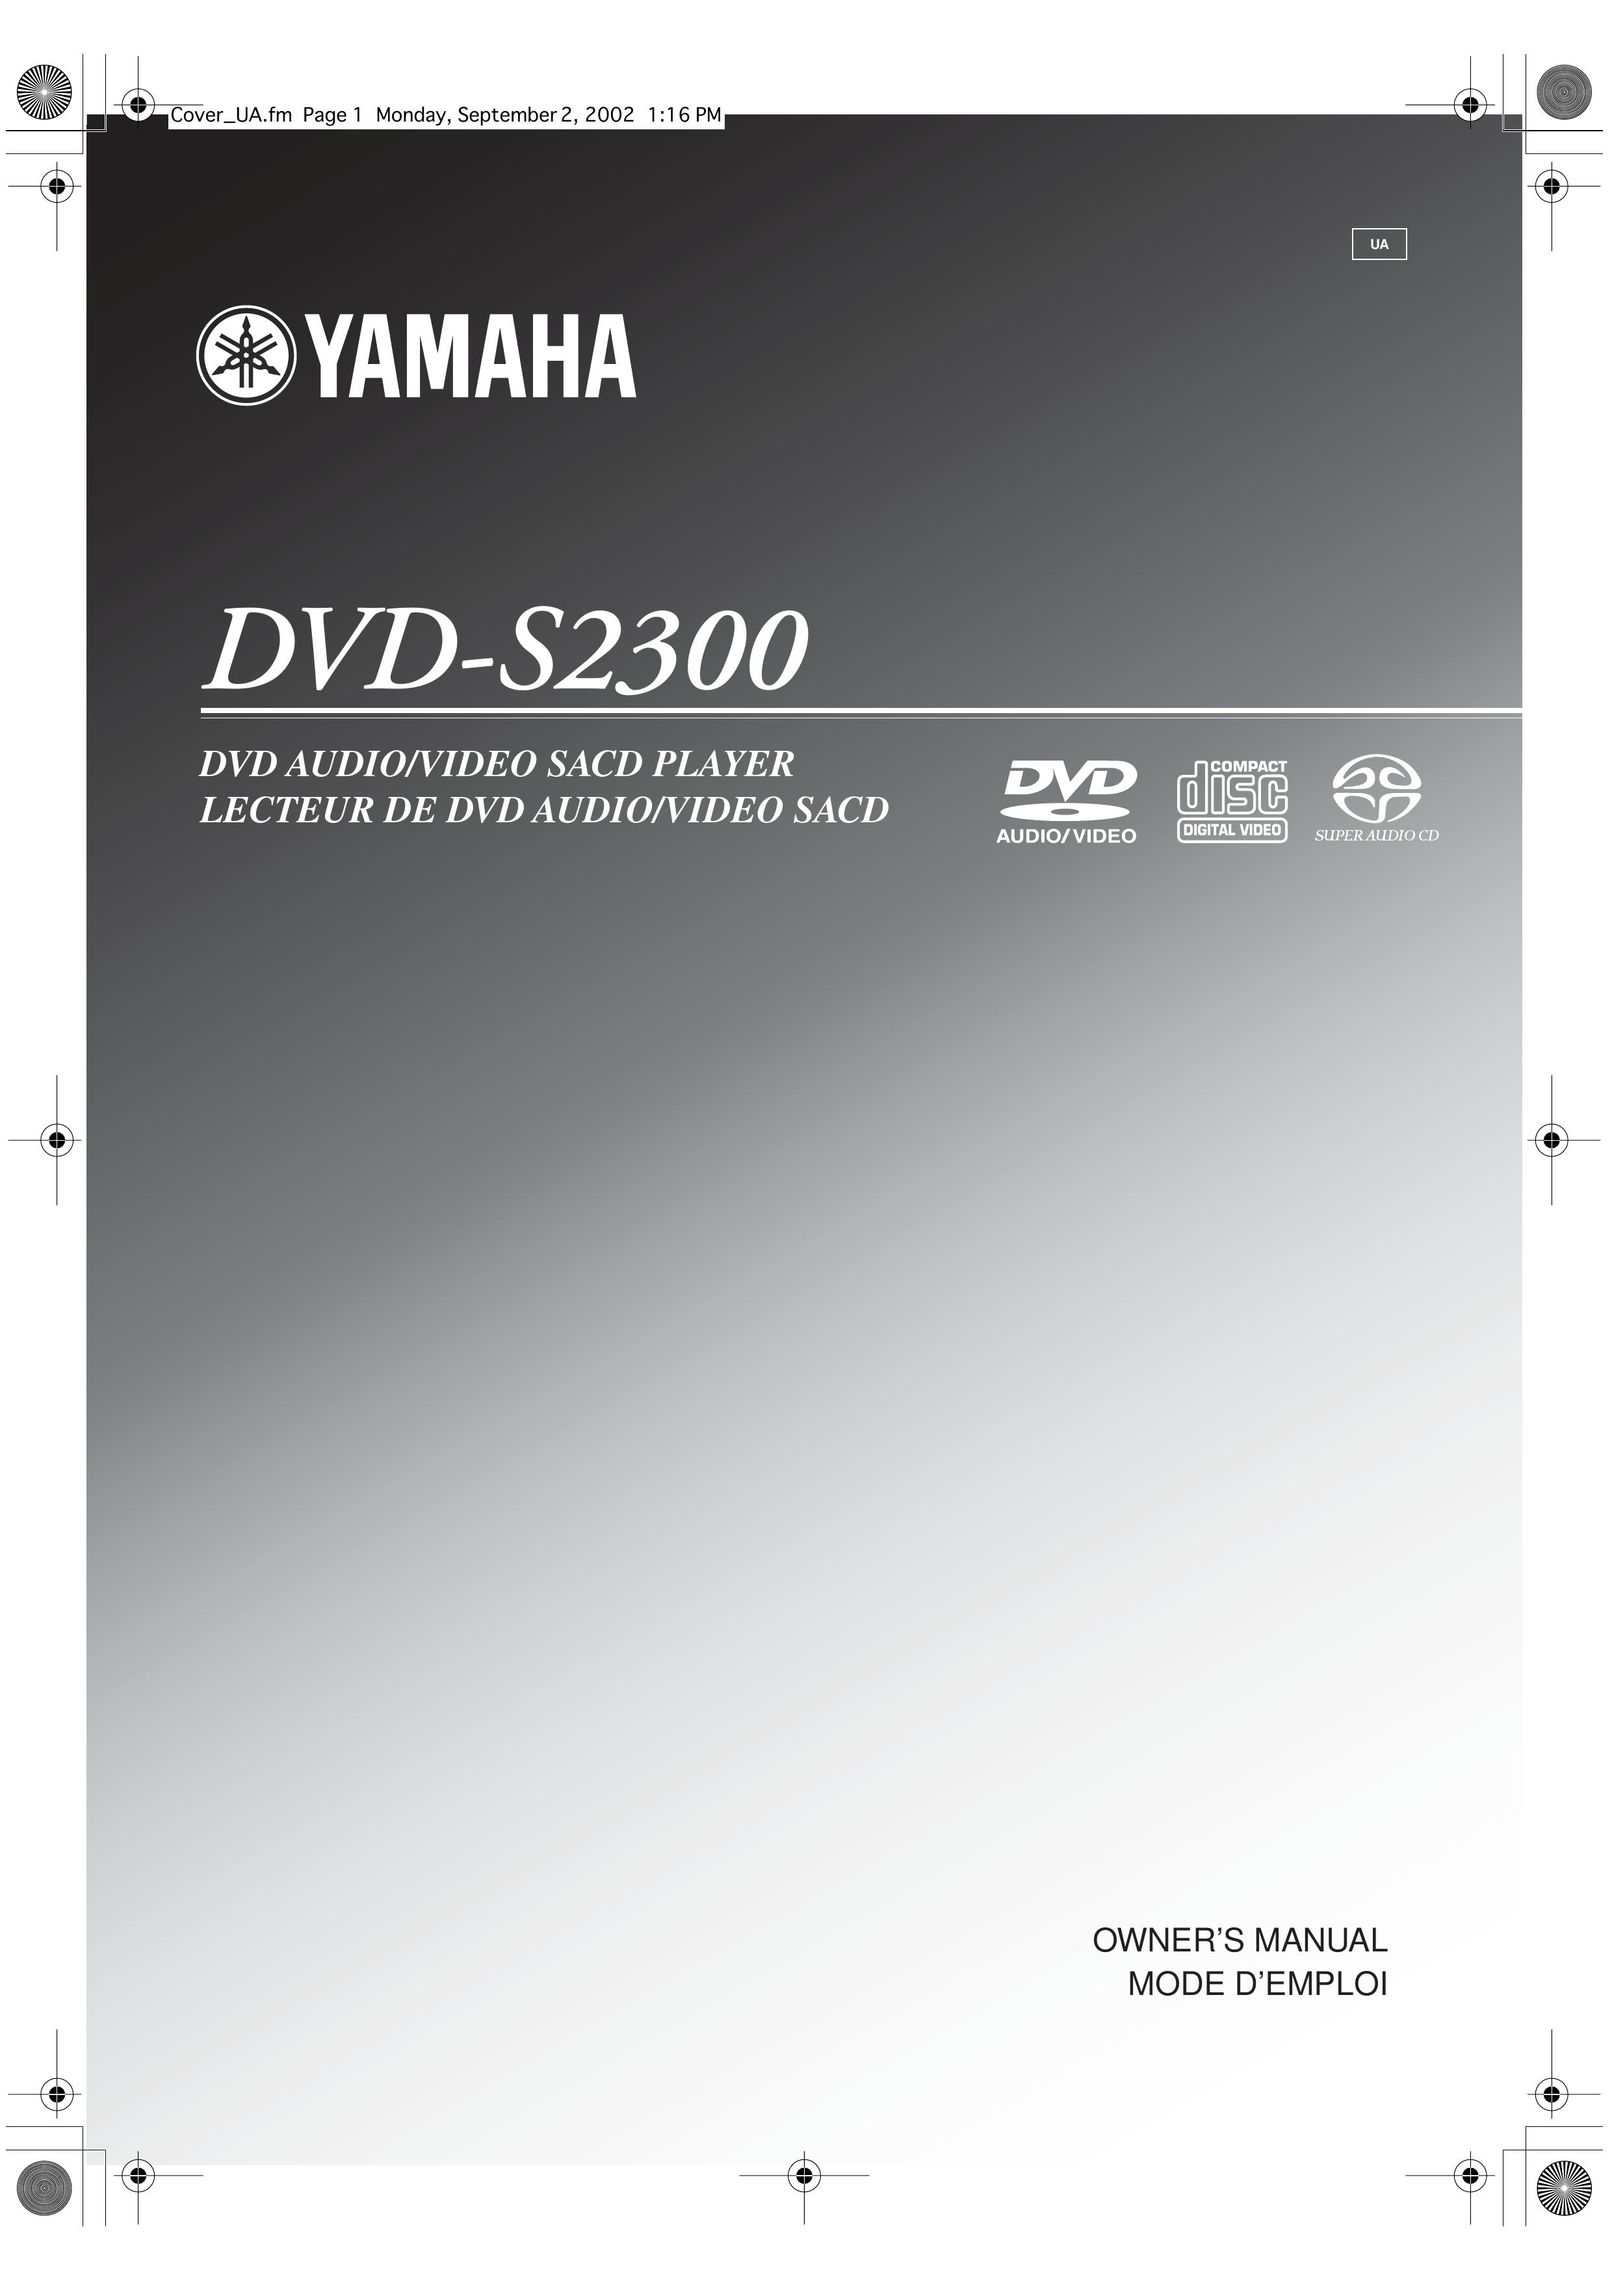 Yamaha DVD-S2300 DVD Player User Manual